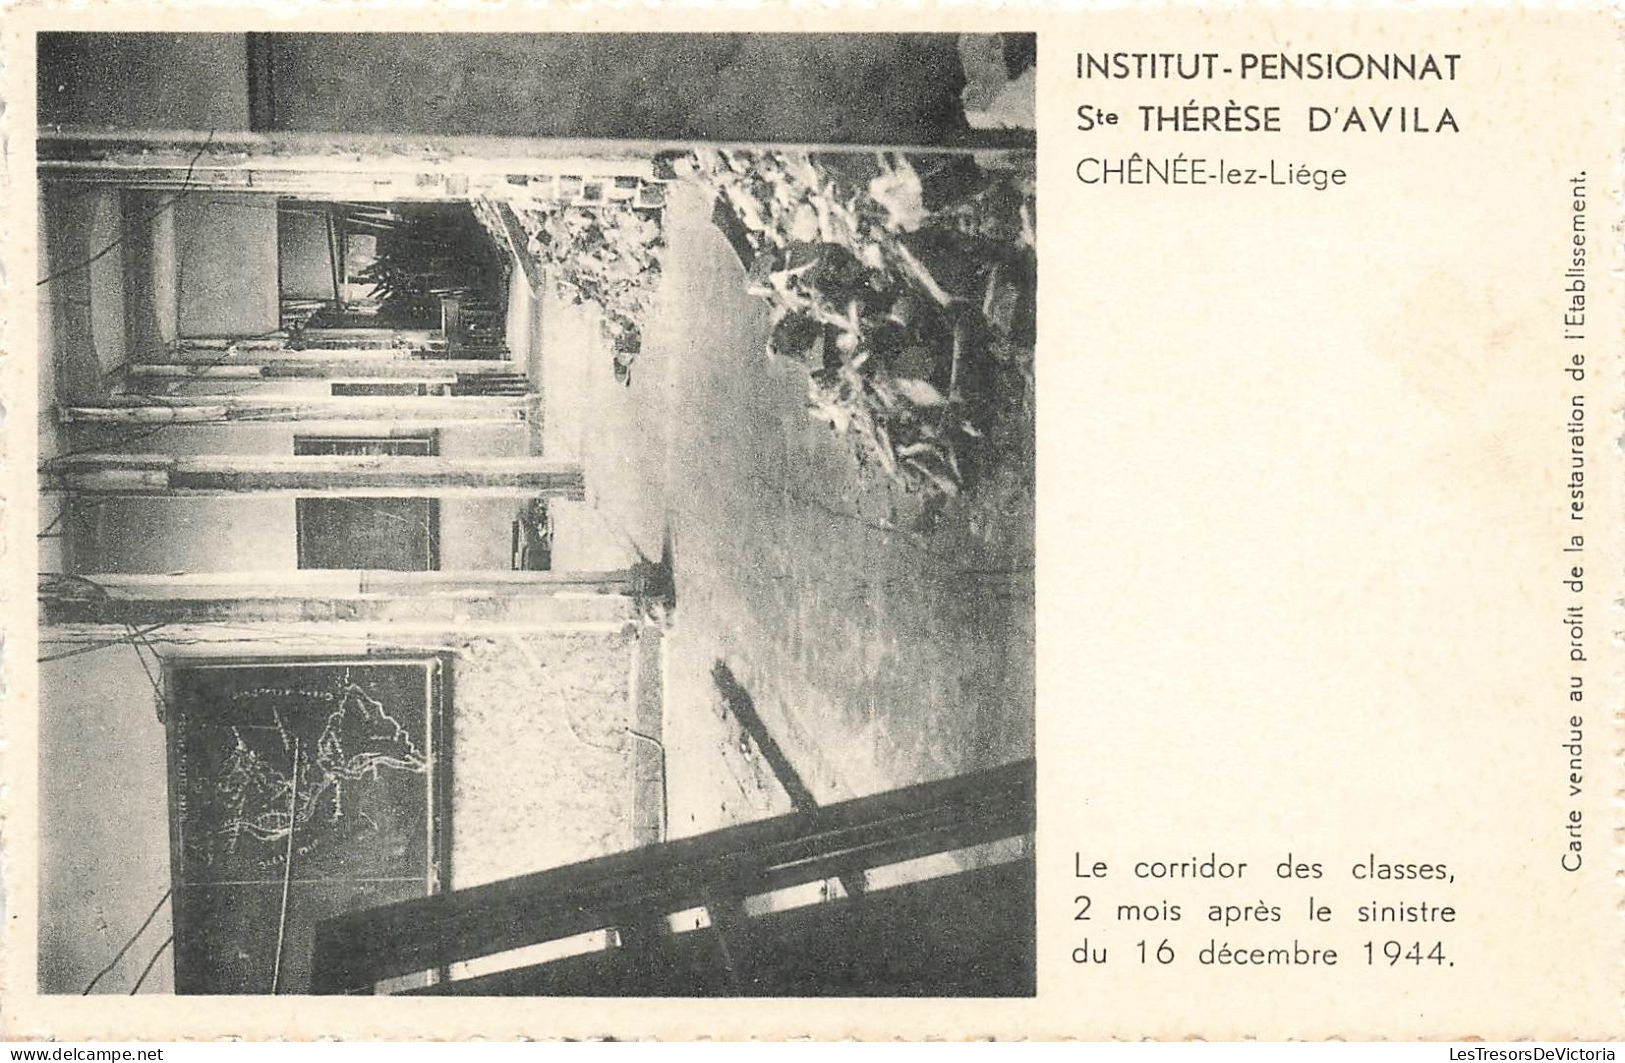 BELGIQUE - Chênée-Lez-Liège - Institut - Pensionnat Sainte Thérèse D'Avila - Carte Postale Ancienne - Liege